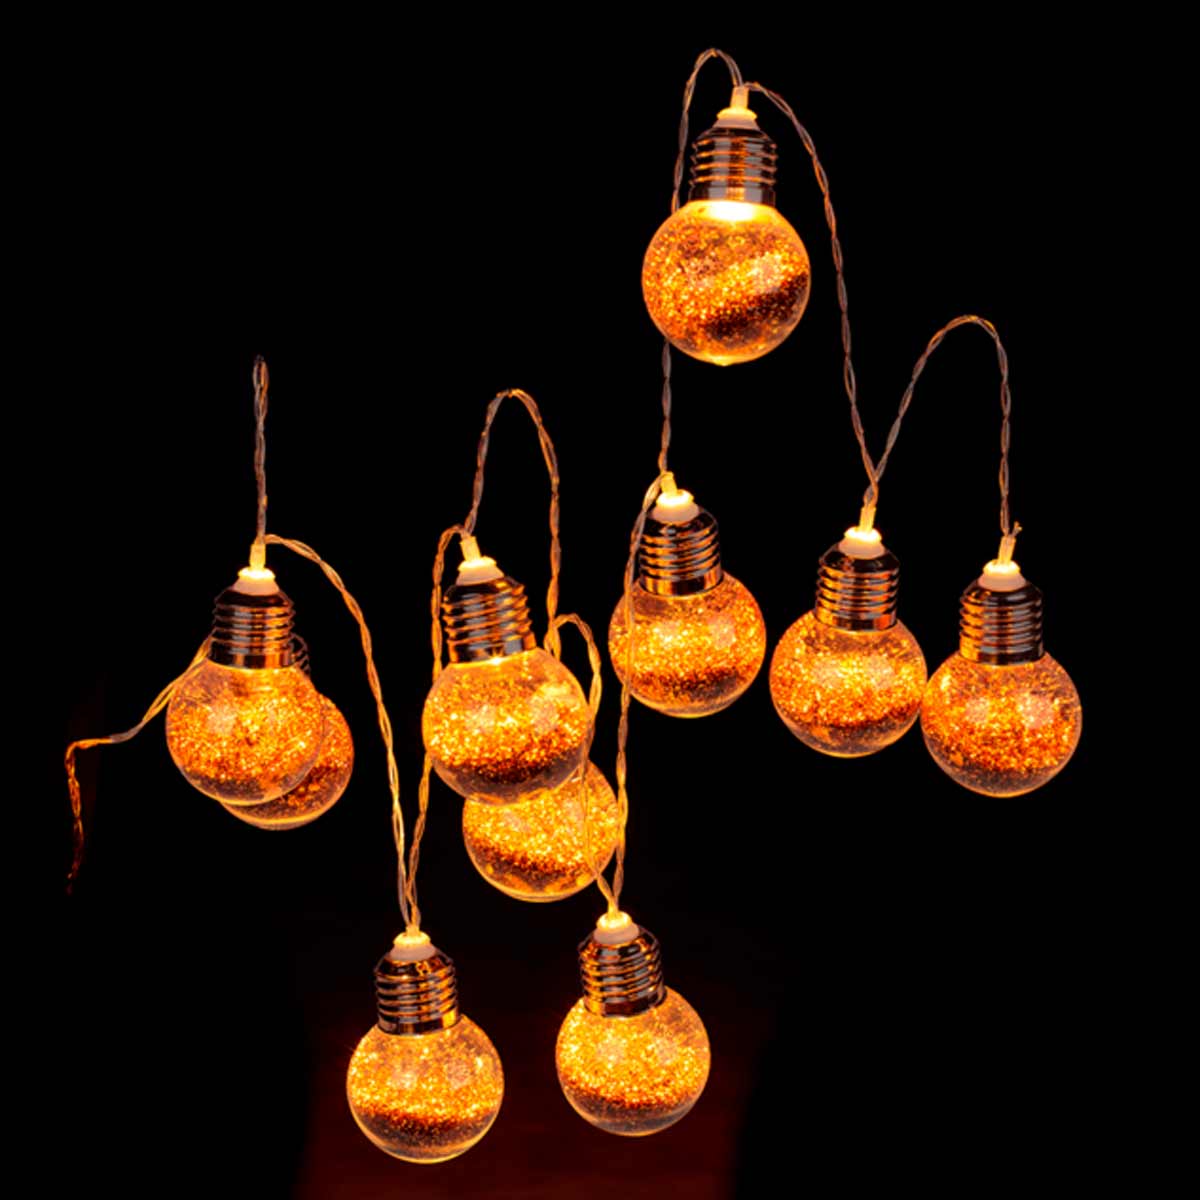 Guirlande lumineuse en forme d'ampoules 1.7 mtre